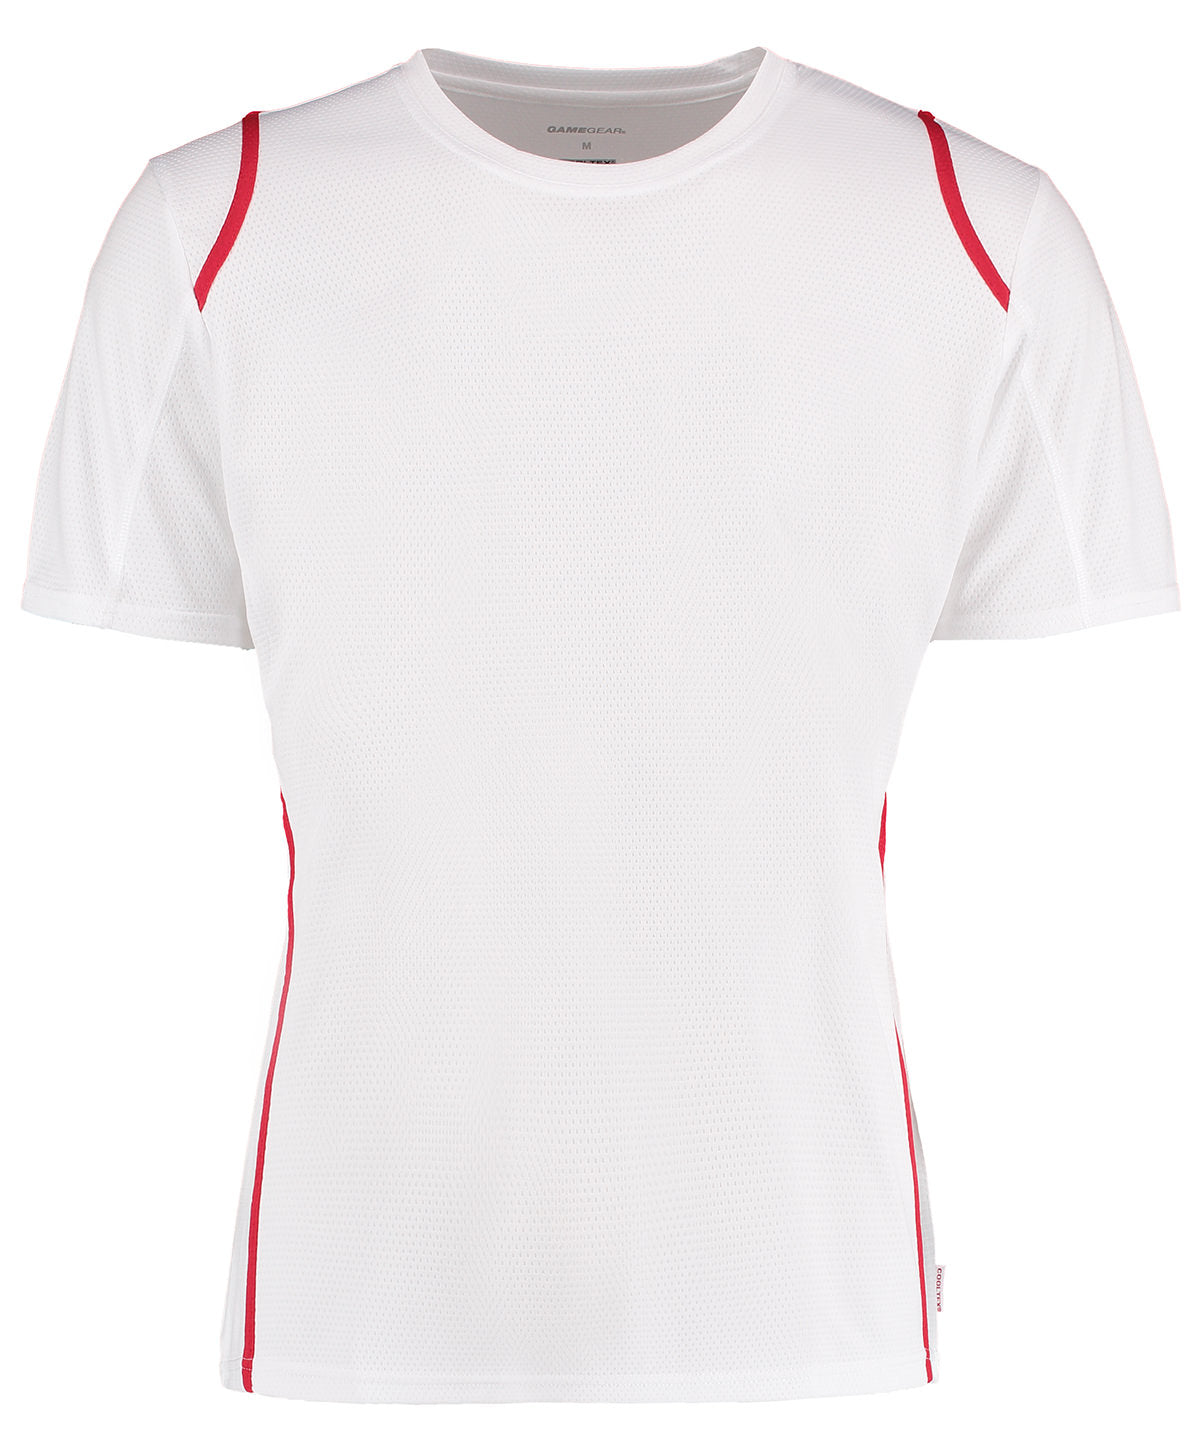 Gamegear® Cooltex® T-shirt Short Sleeve (regular Fit)